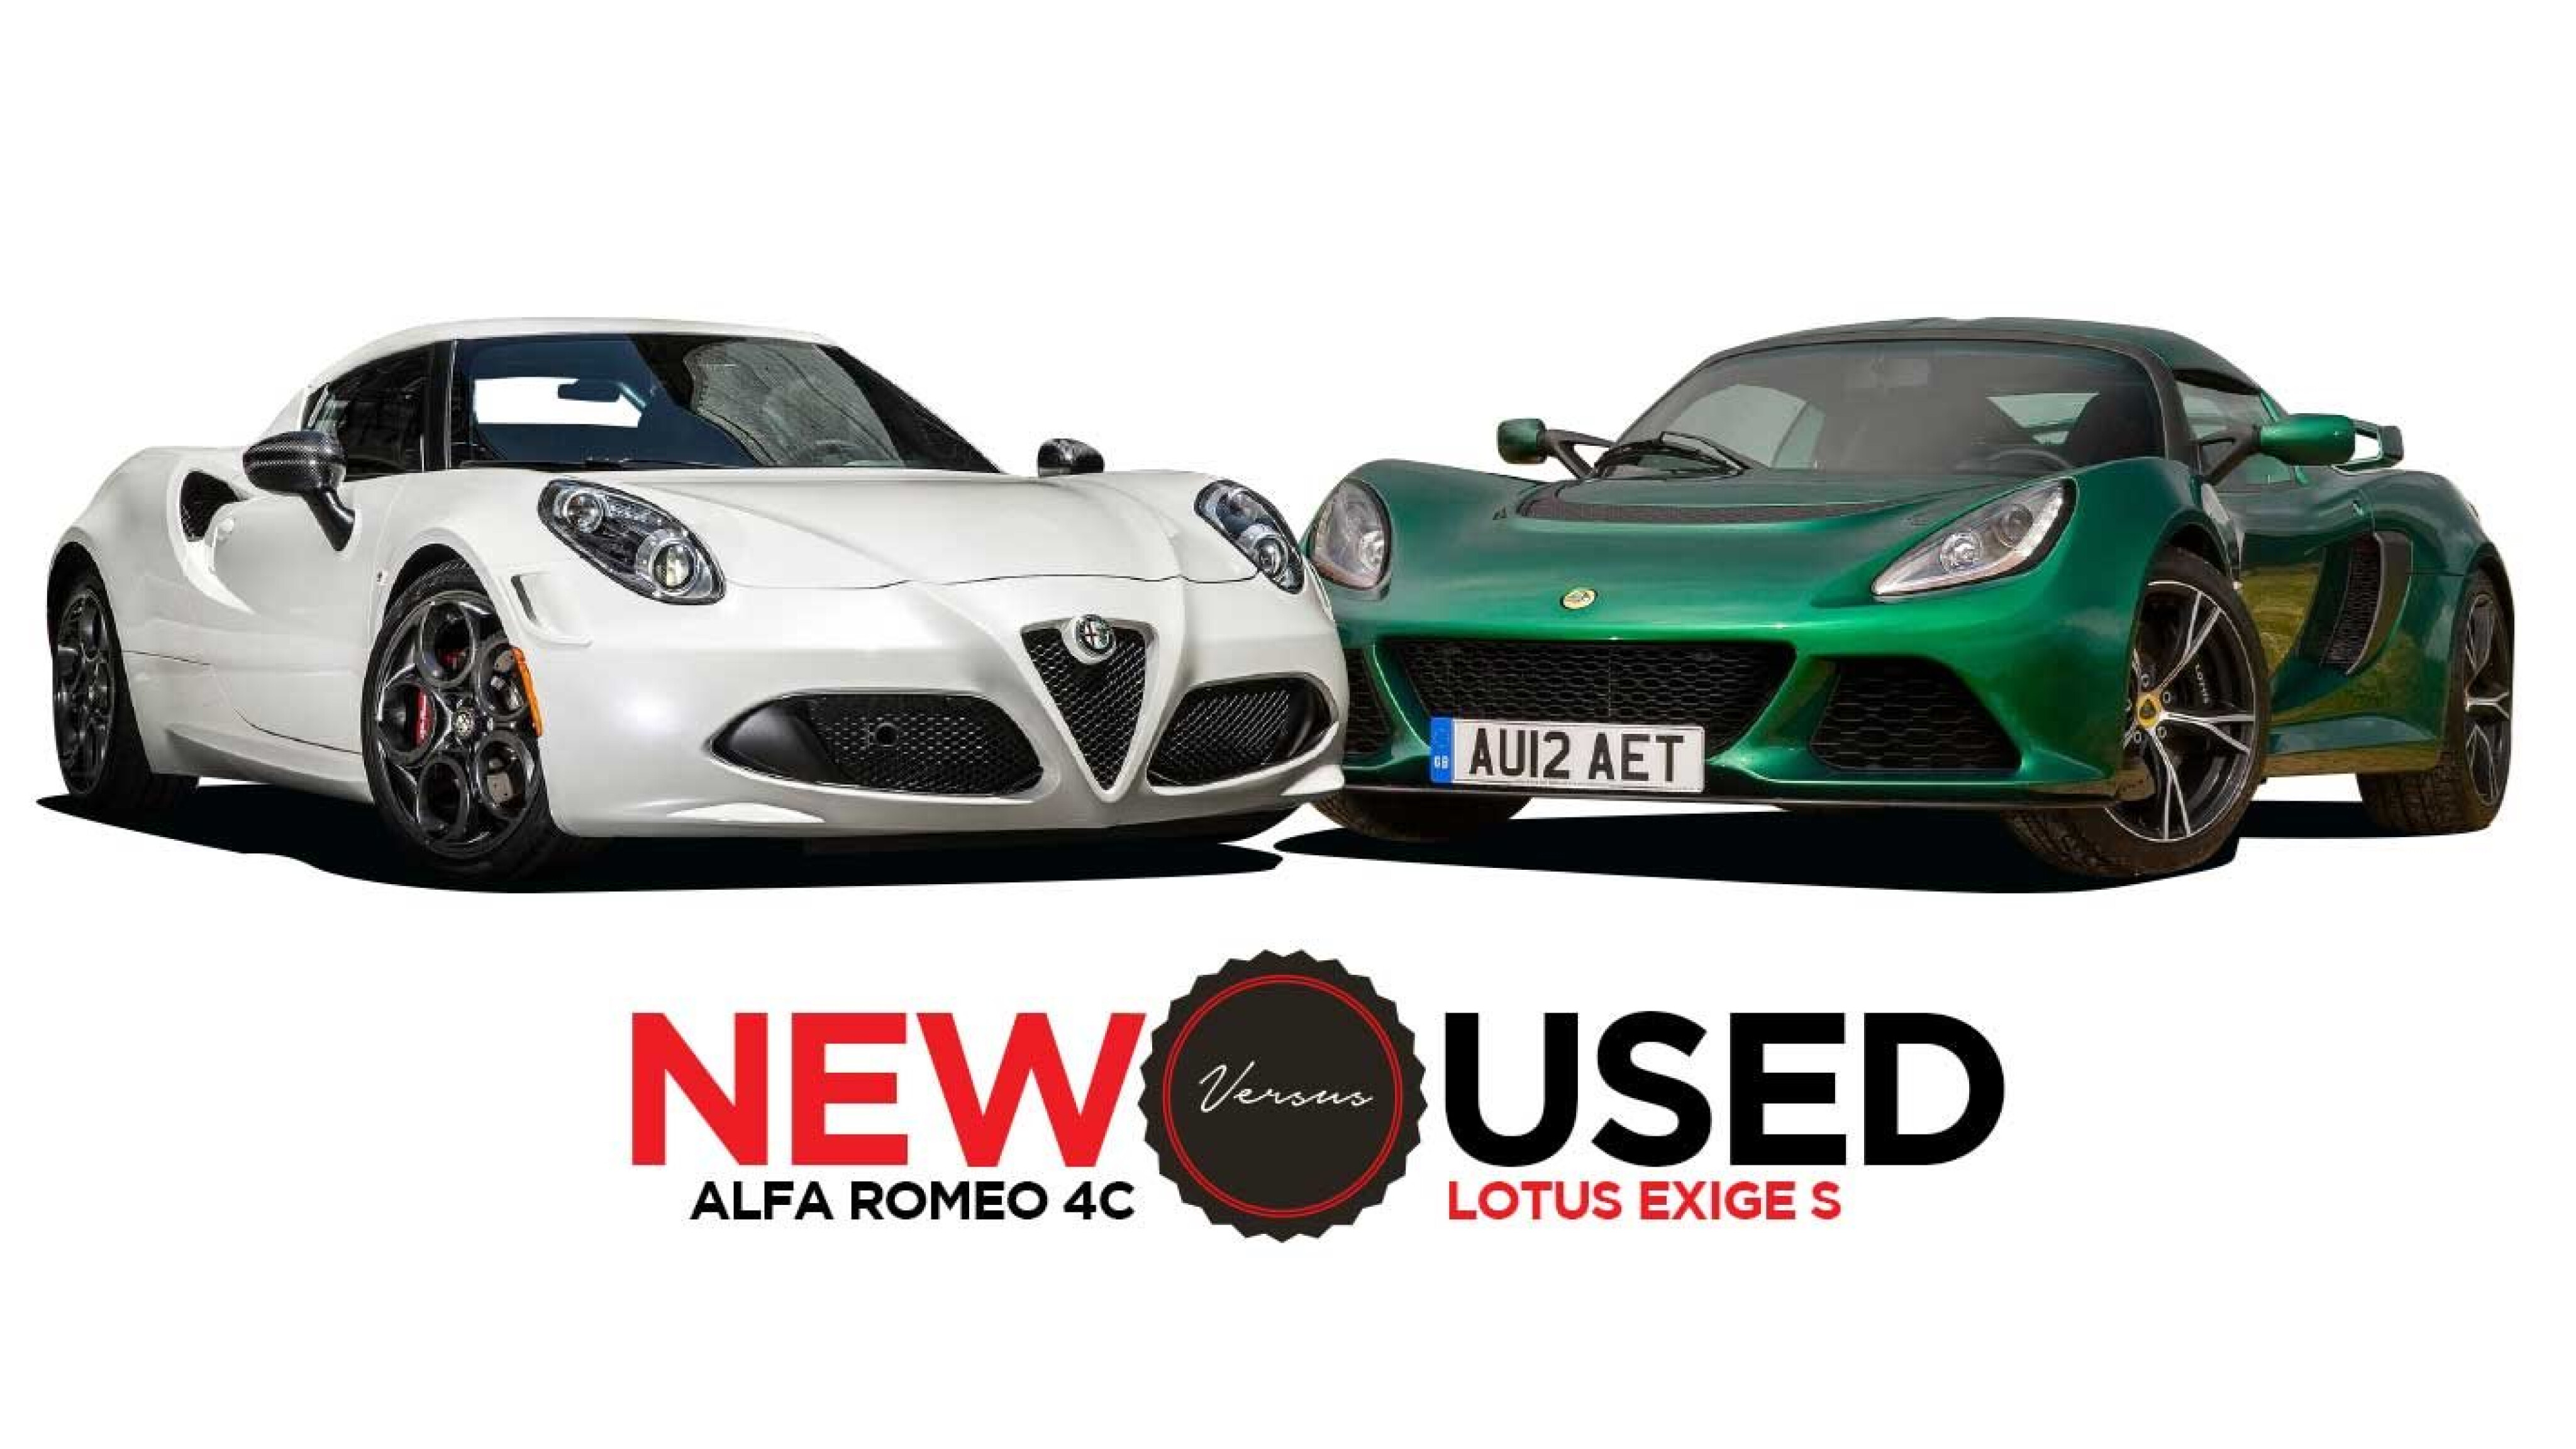 2018 Alfa Romeo 4C vs 2012 Lotus Exige S: New vs Used